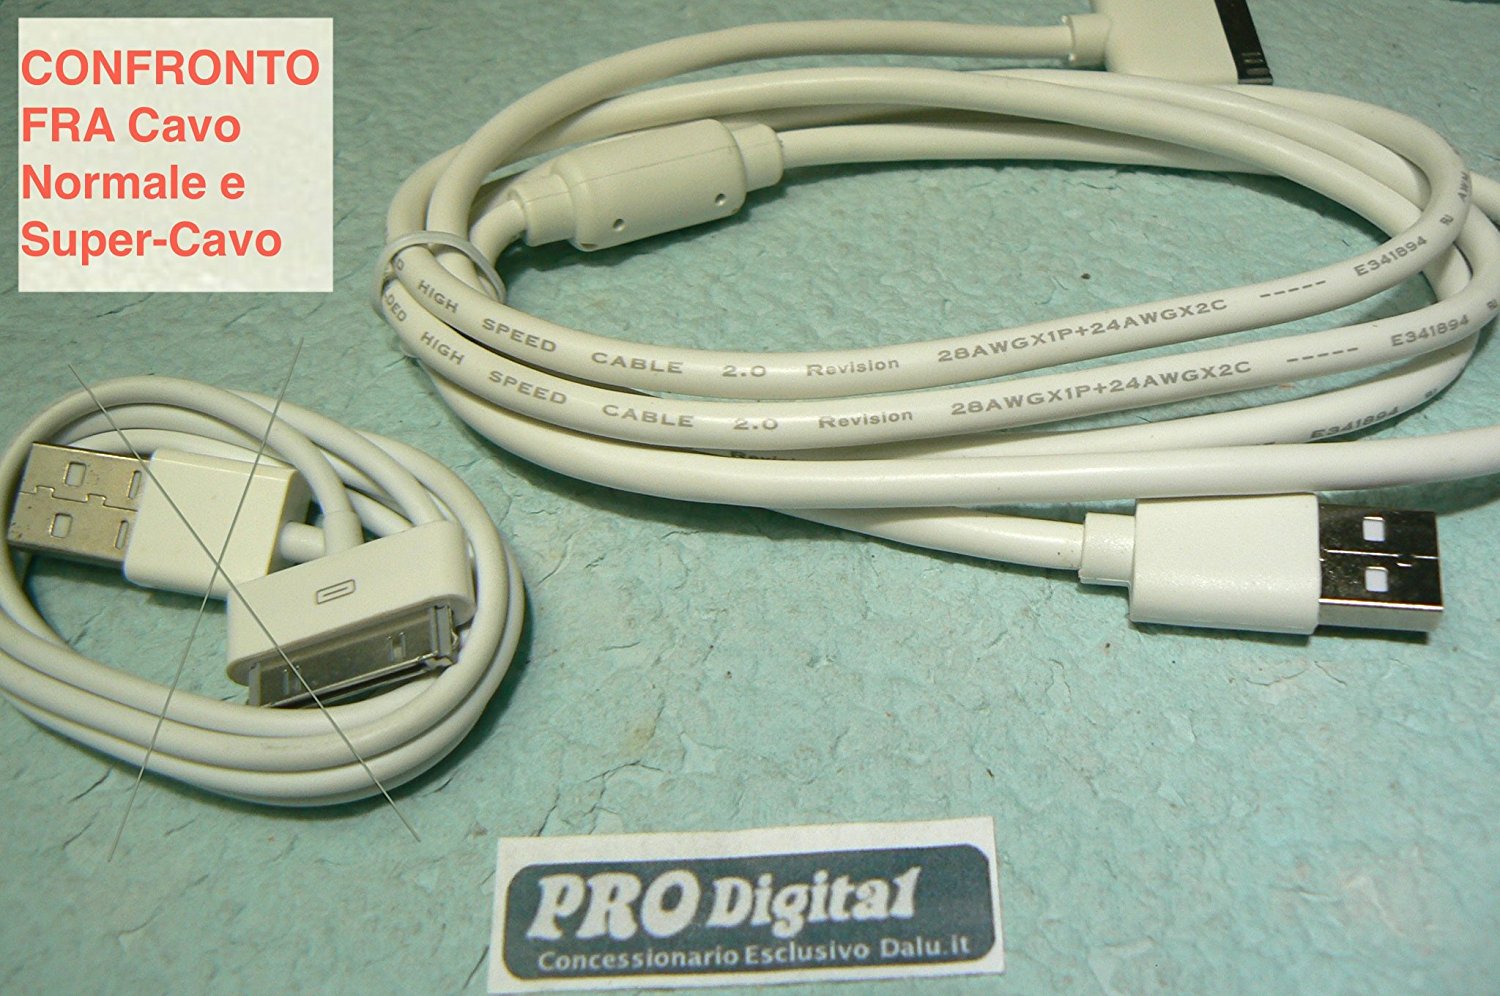 ProDigital USB CABLE IPHONE 4 E IPAD introvabili24 